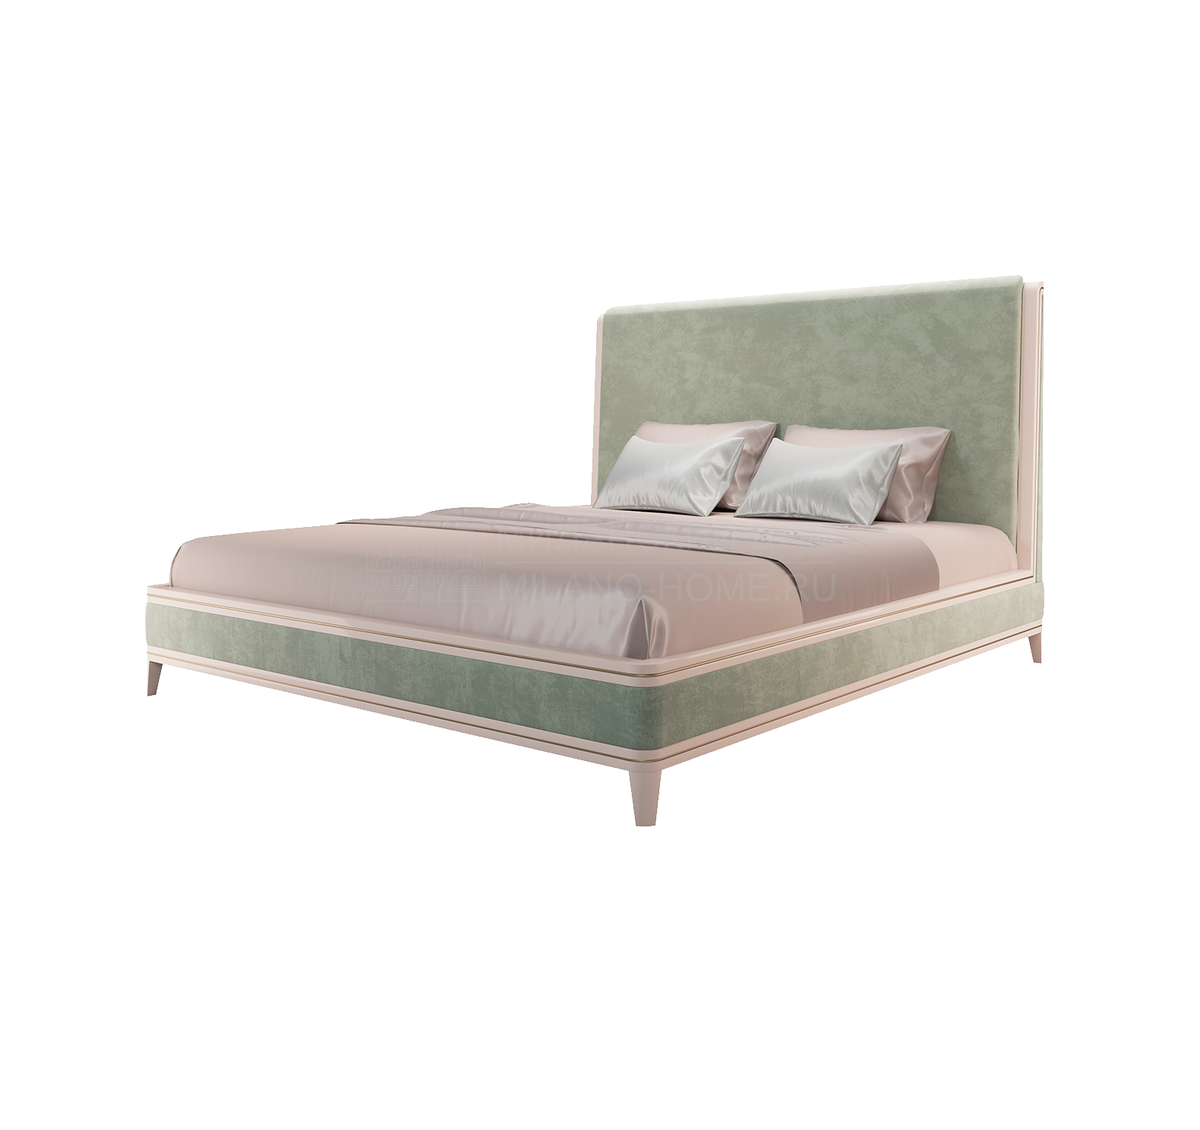 Кровать с мягким изголовьем Clicquot bed из Португалии фабрики FRATO